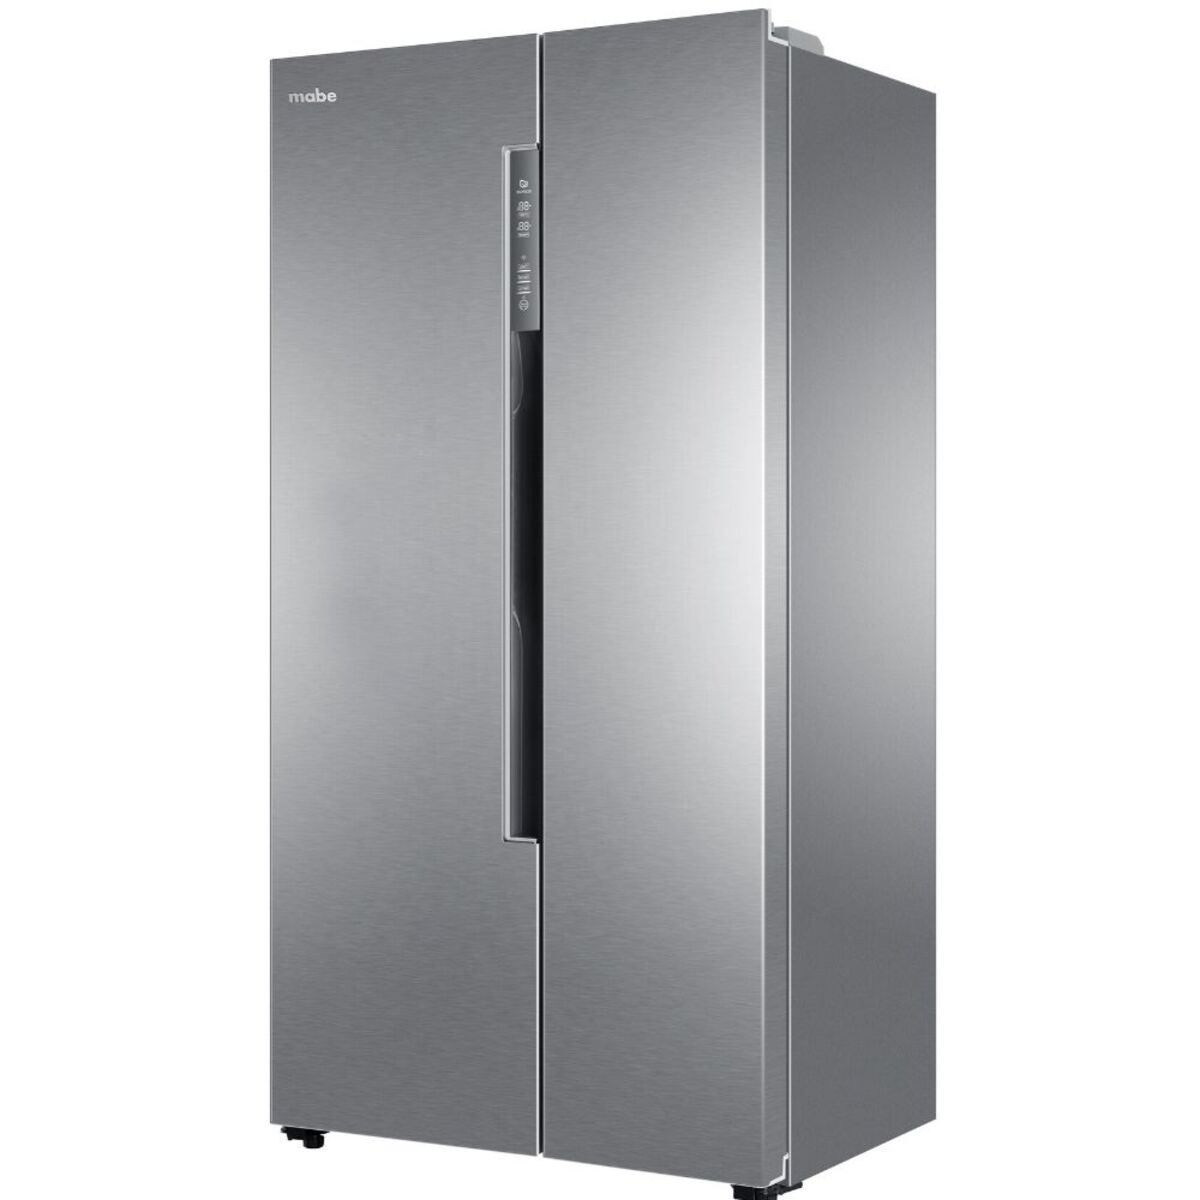 Refrigeración - Neveras 225 $1.000.000 - $1.300.000 Titanium Gris